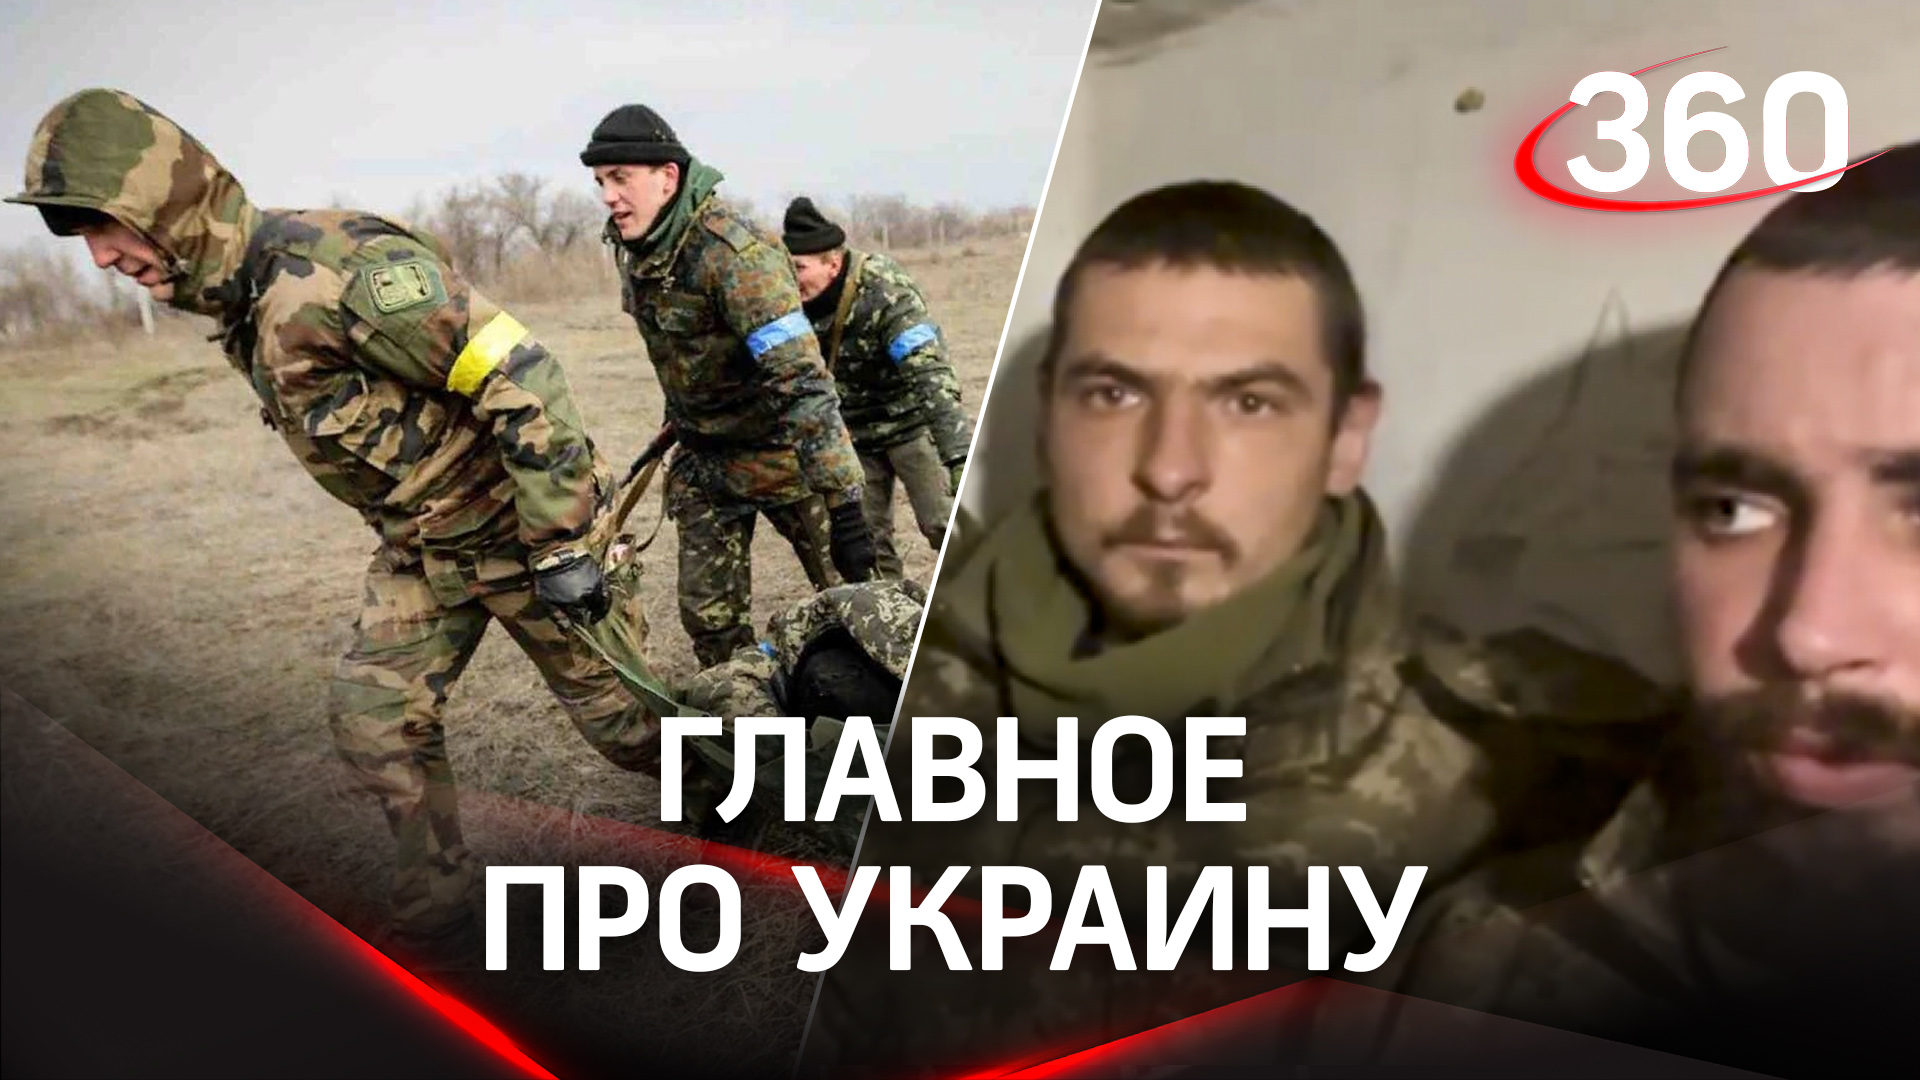 В Соледаре уничтожена бригада ВСУ, а Кадыров опубликовал видео допроса пленных украинских боевиков